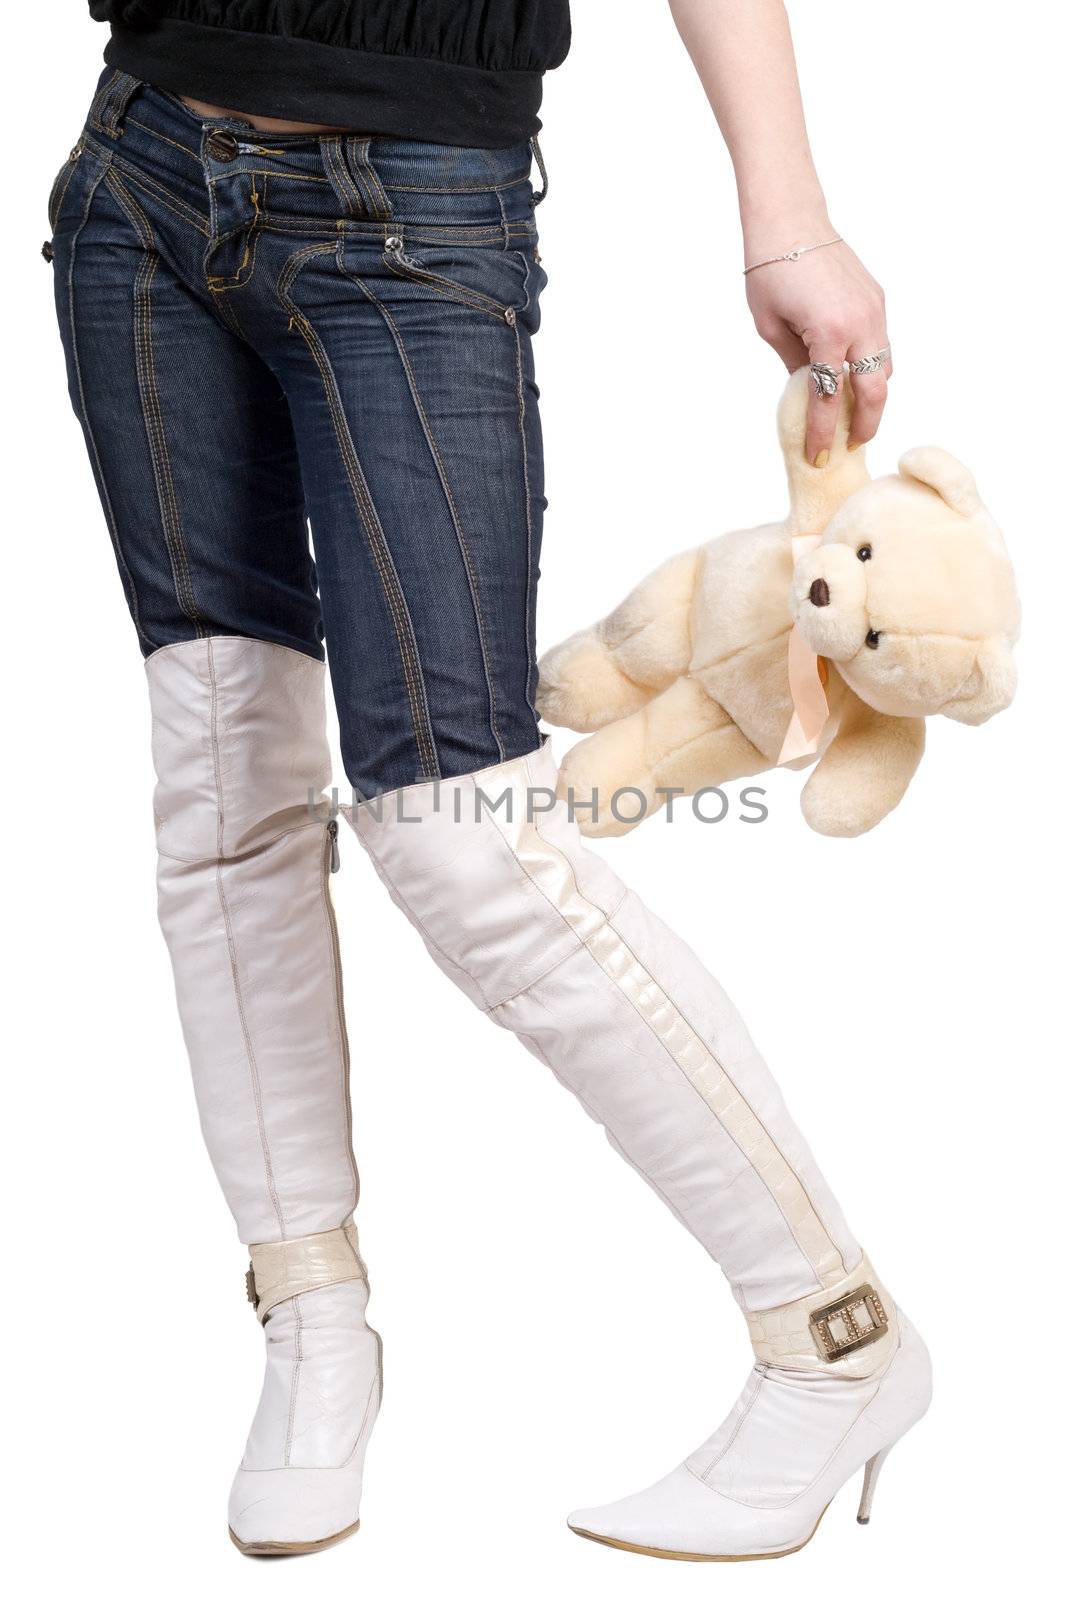 Woman taking a teddy bear by acidgrey